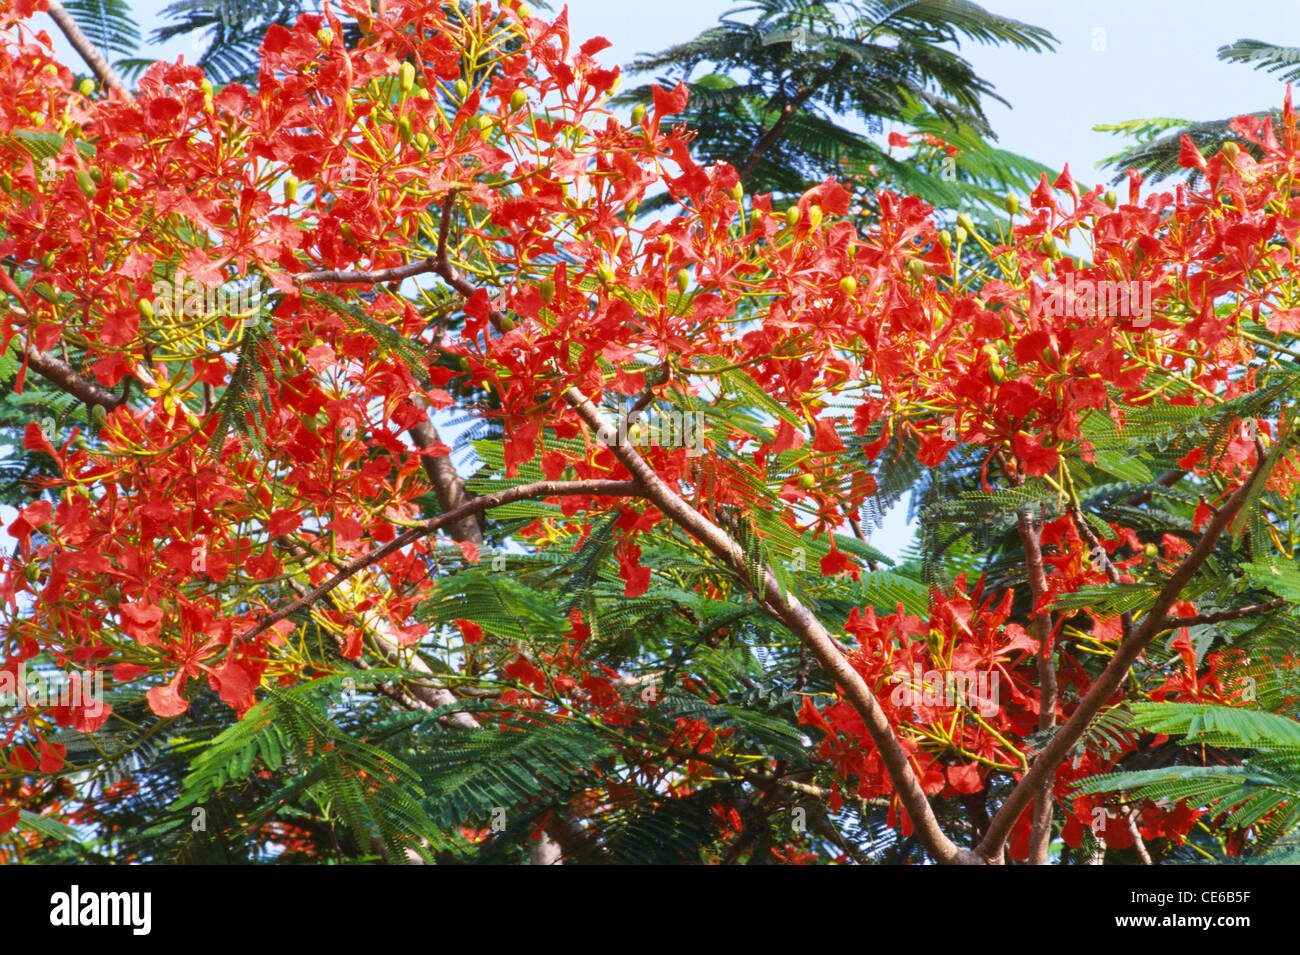 Arbre à fleurs ; Gulmohar ; Delonix regia ; Delon Regia ; Royal poinciana ; Trivandrum ; Kerala ; Inde ; asie Banque D'Images